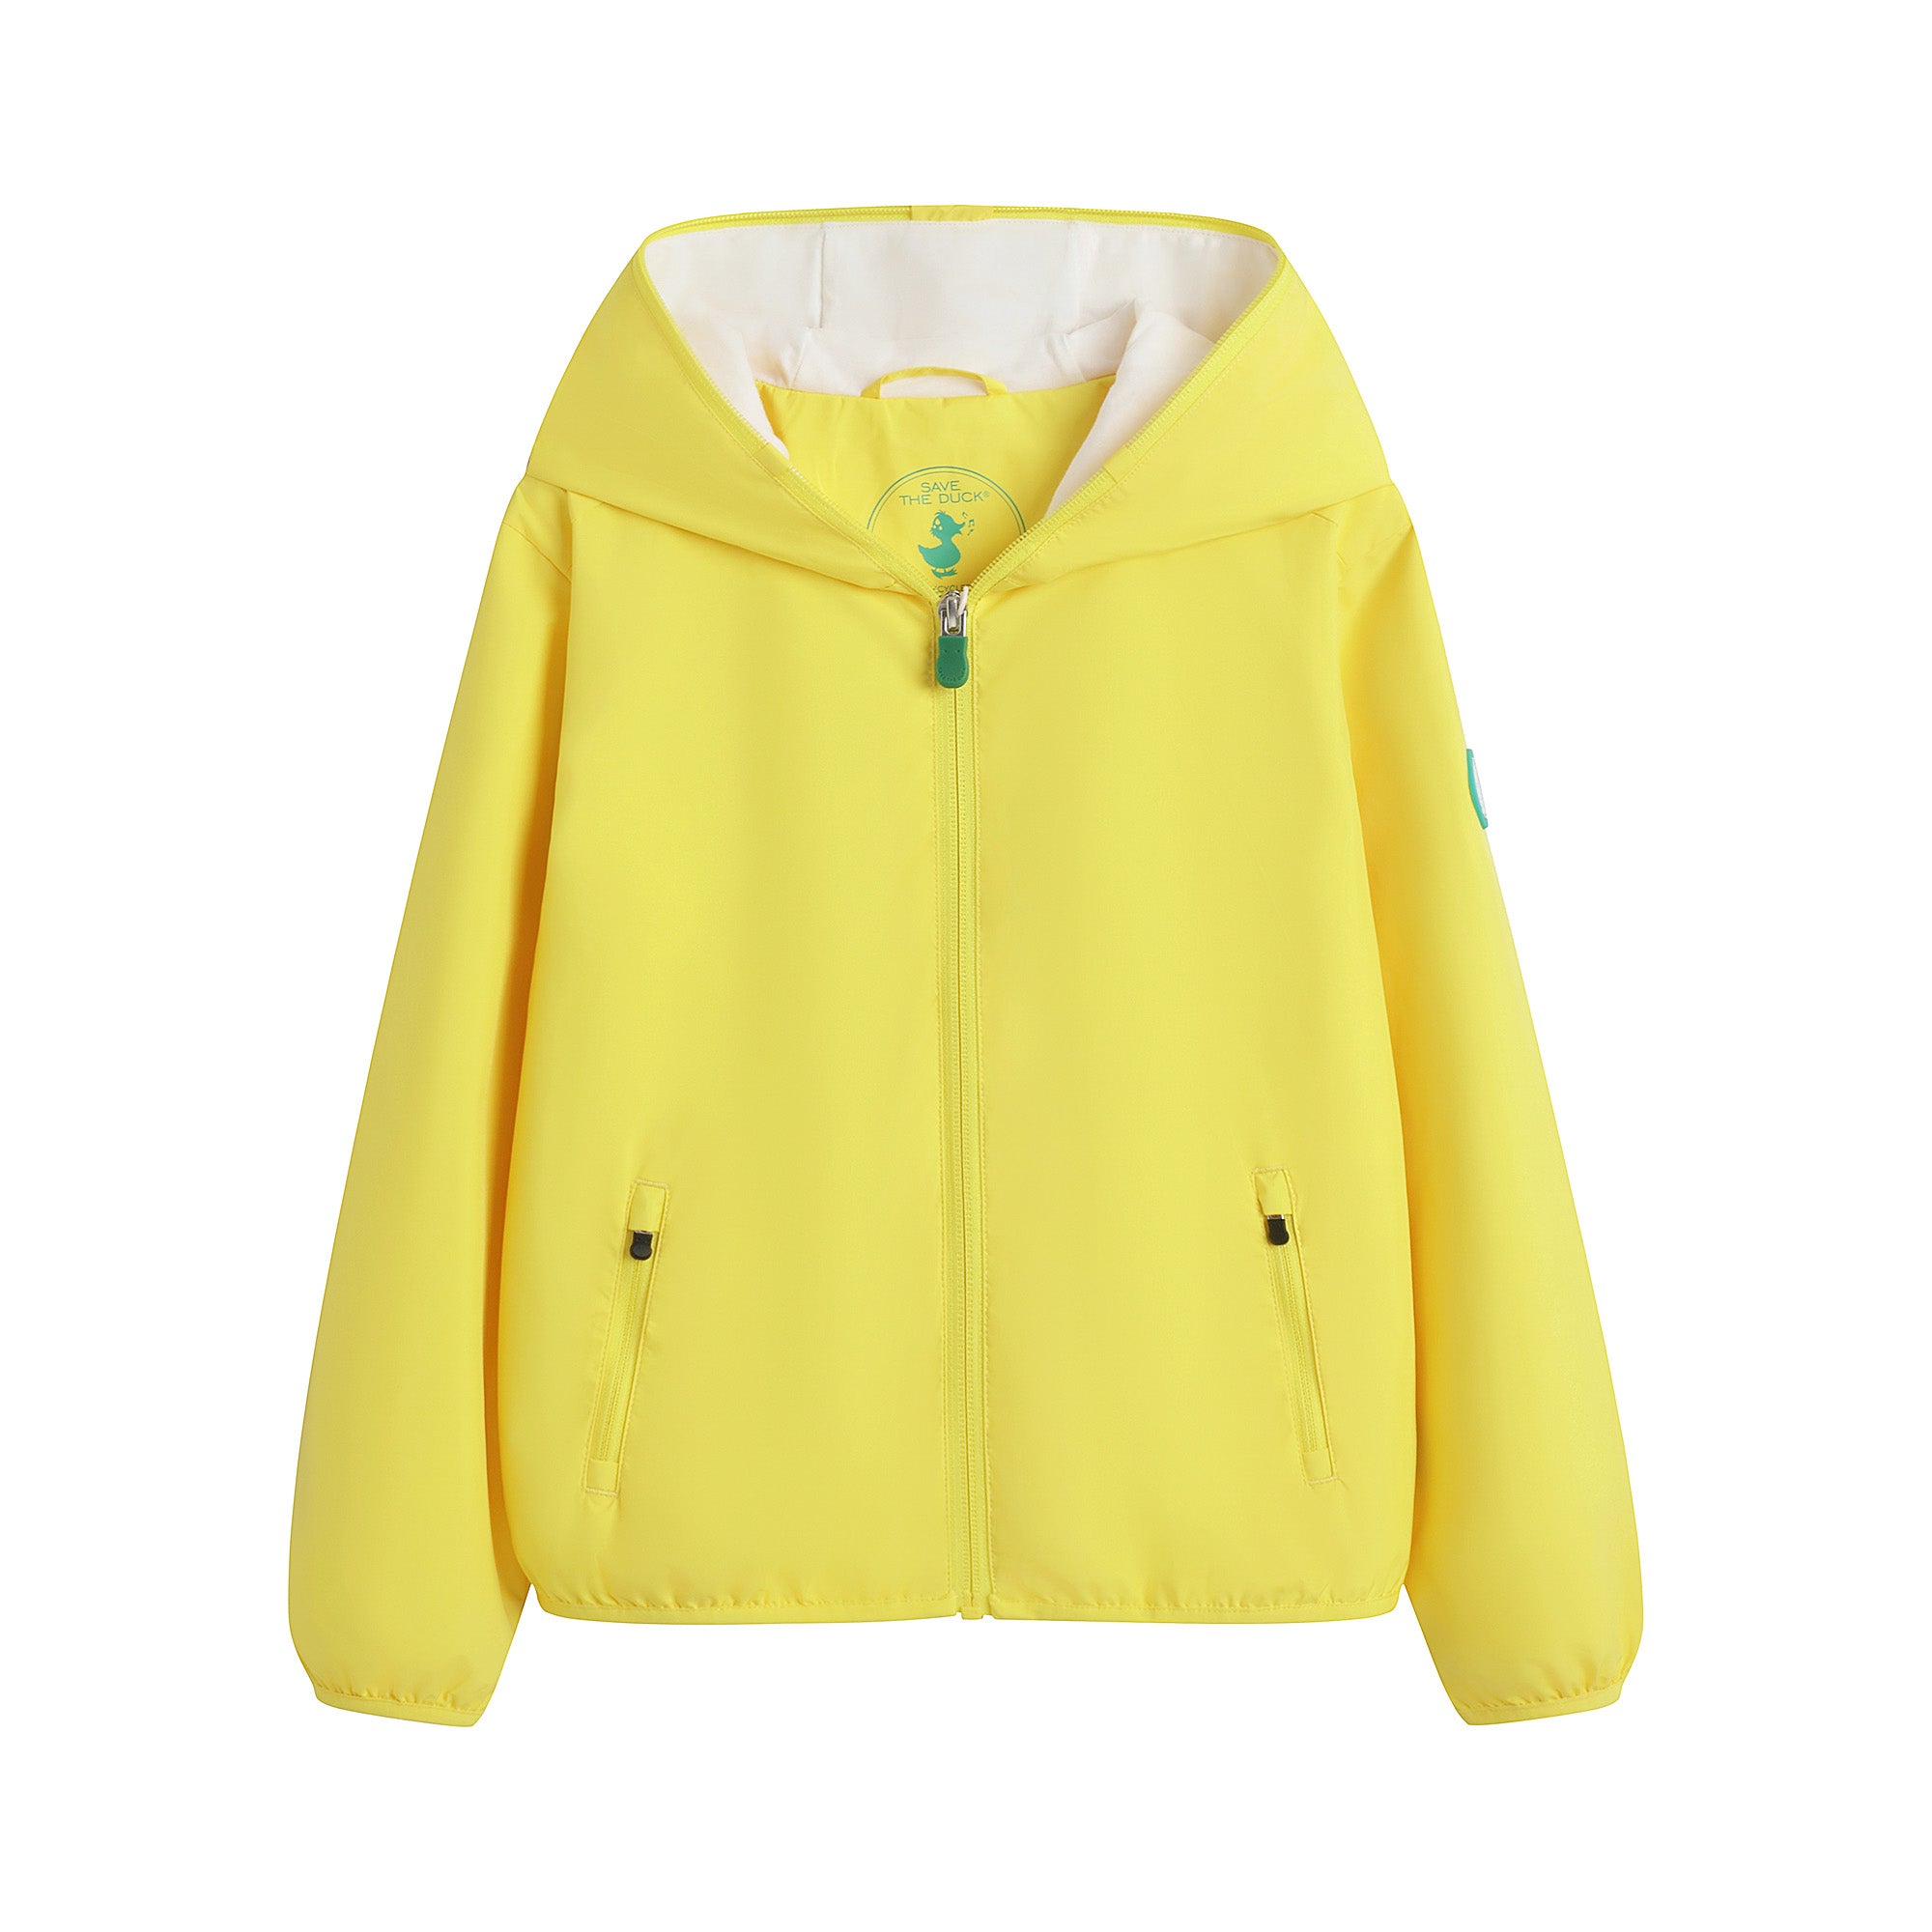 Boys & Girls Yellow Hooded Jacket